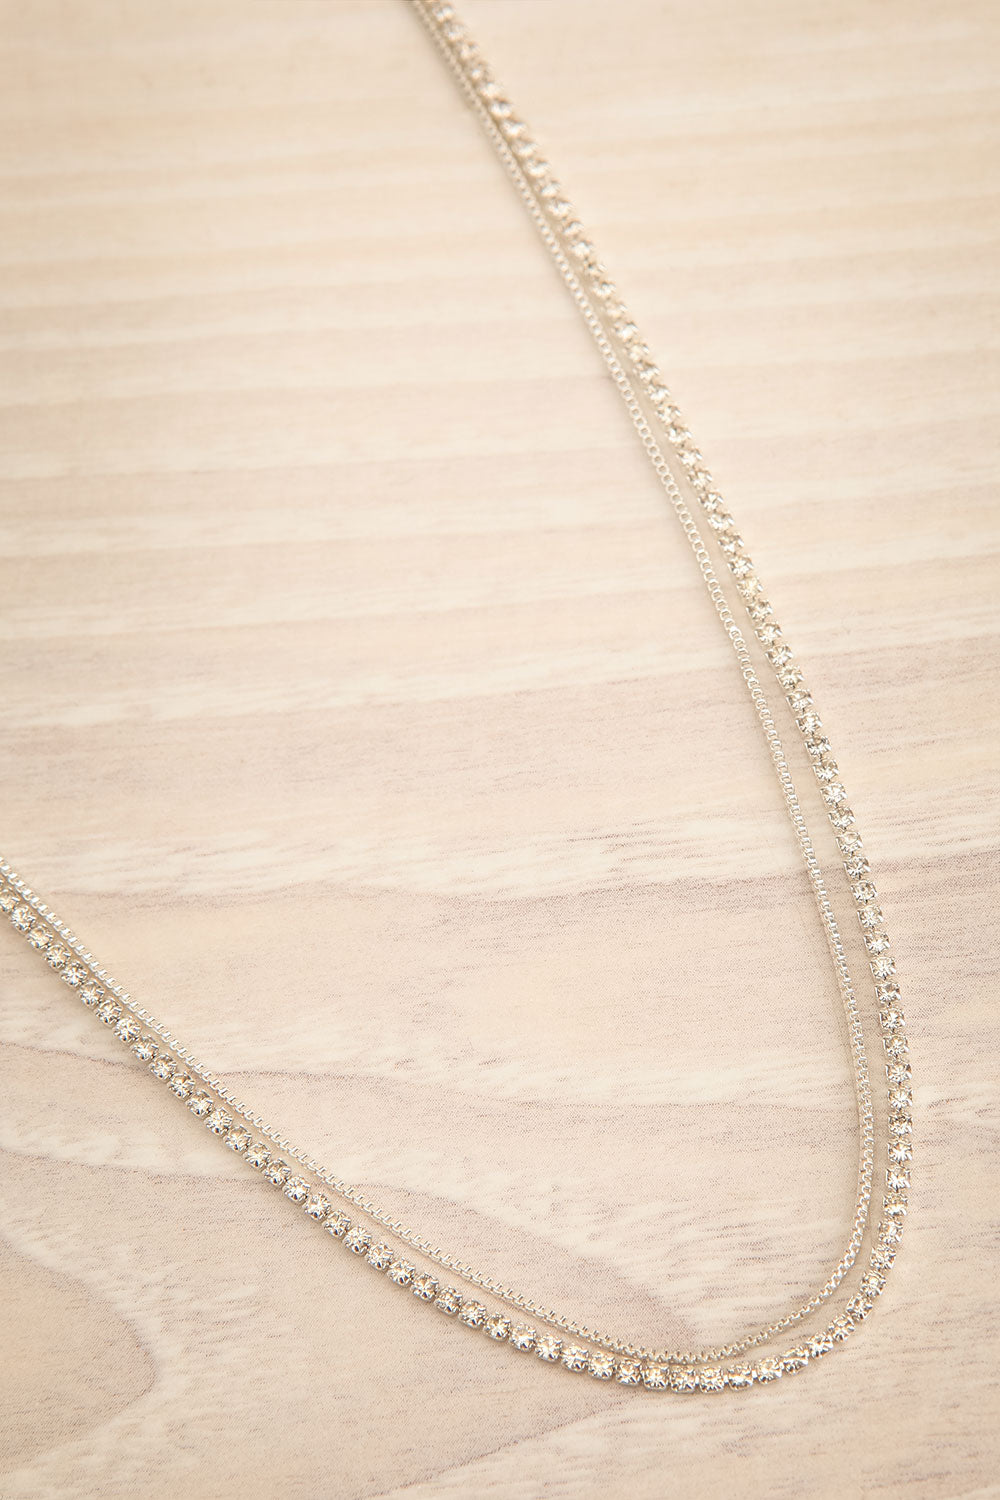 Maav Silver 2-in-1 Minimalist Necklace | La petite garçonne flat view